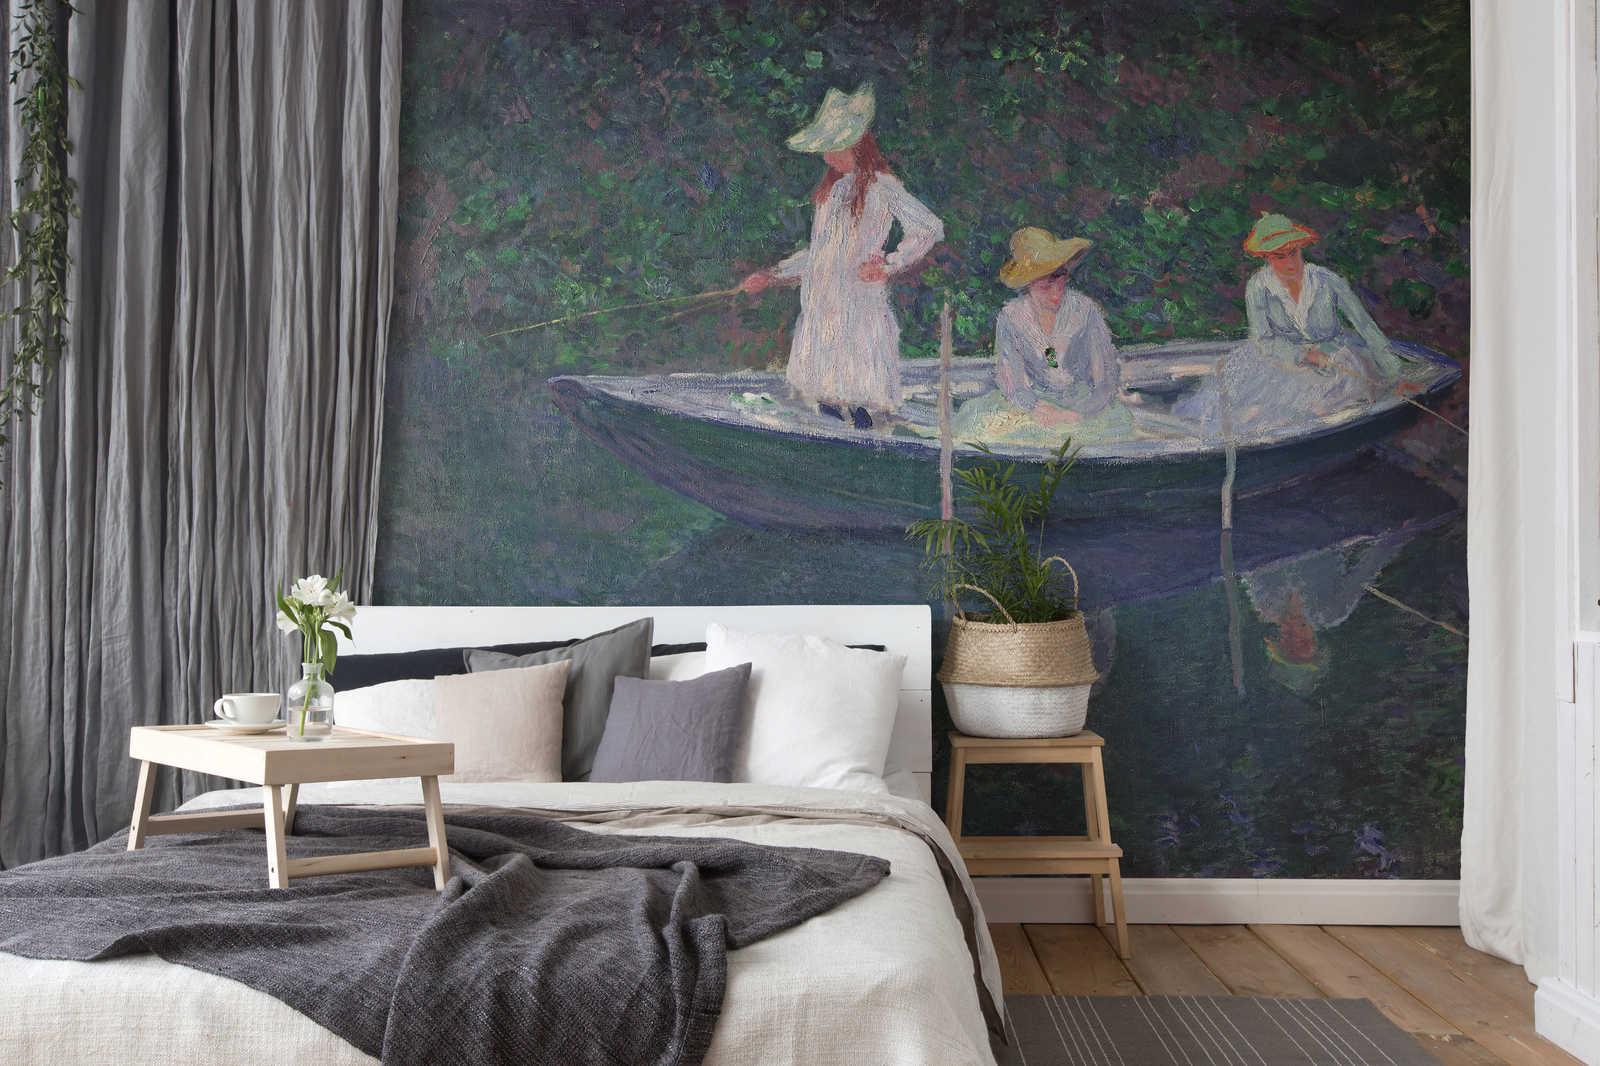             Papier peint panoramique "Le bateau à Giverny" de Claude Monet
        